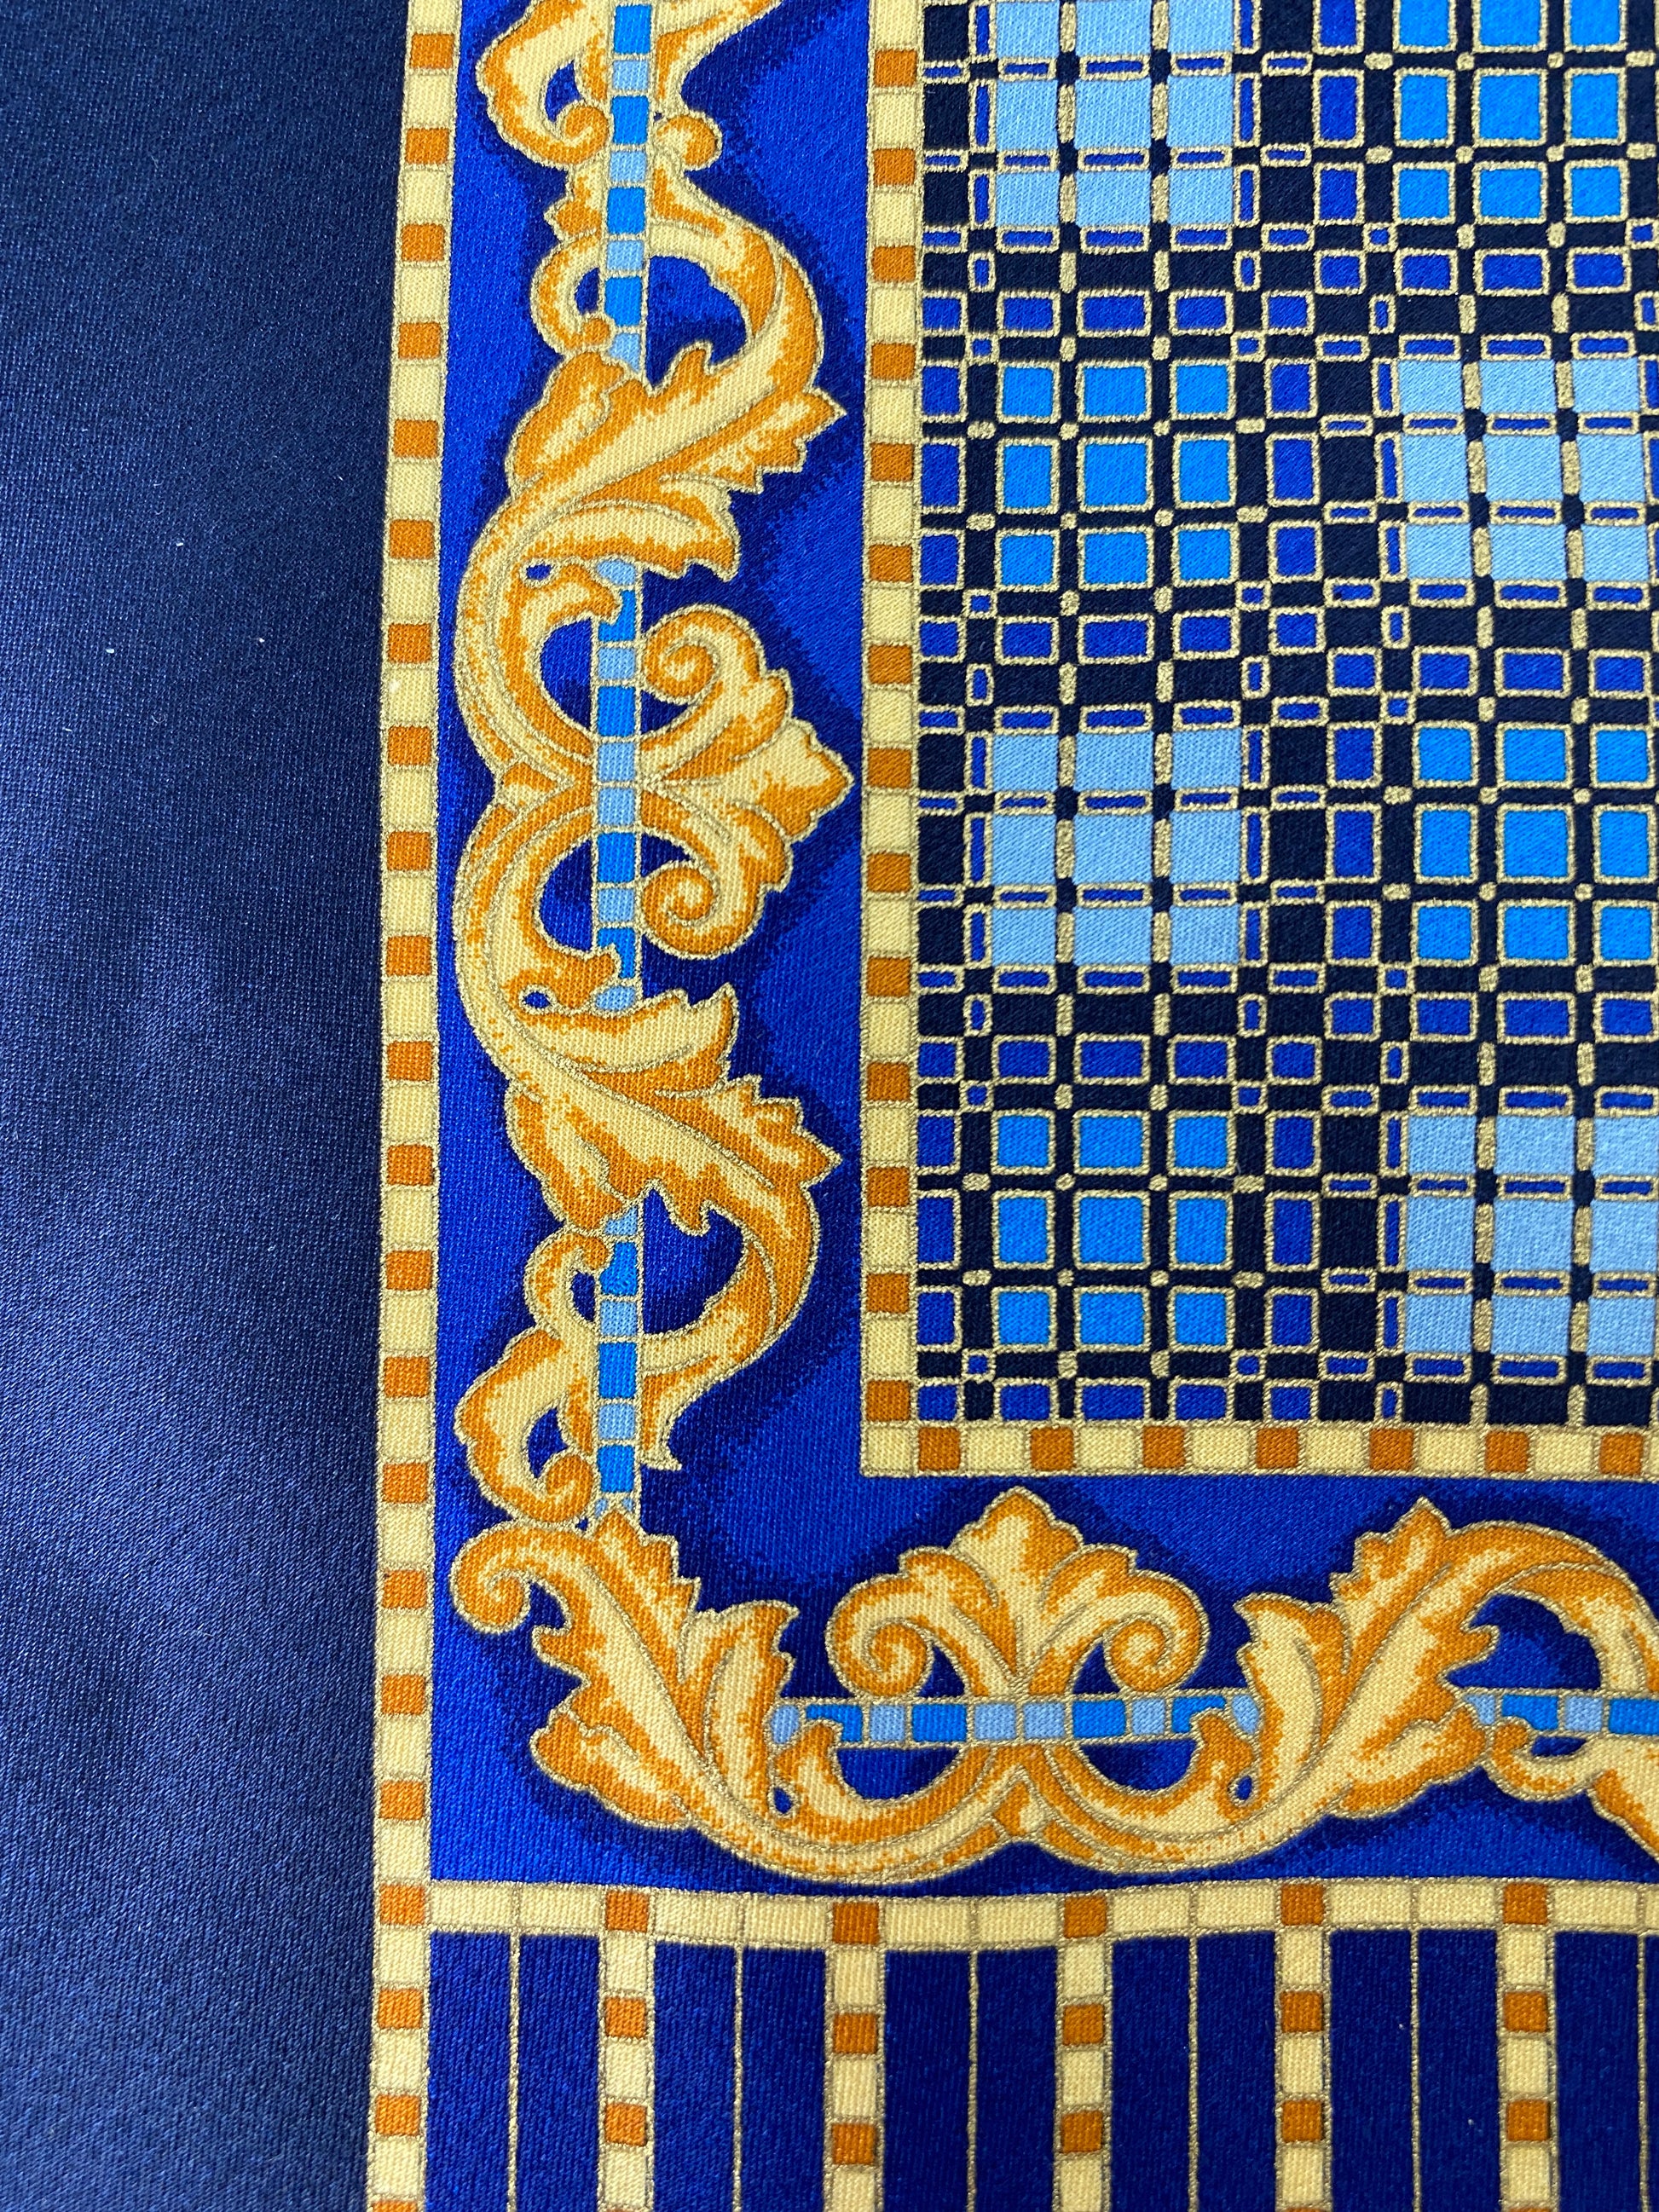 Close-up of: 90s Deadstock Silk Necktie, Men's Vintage Navy/ Blue/ Gold Art Nouveau Print Tie, NOS